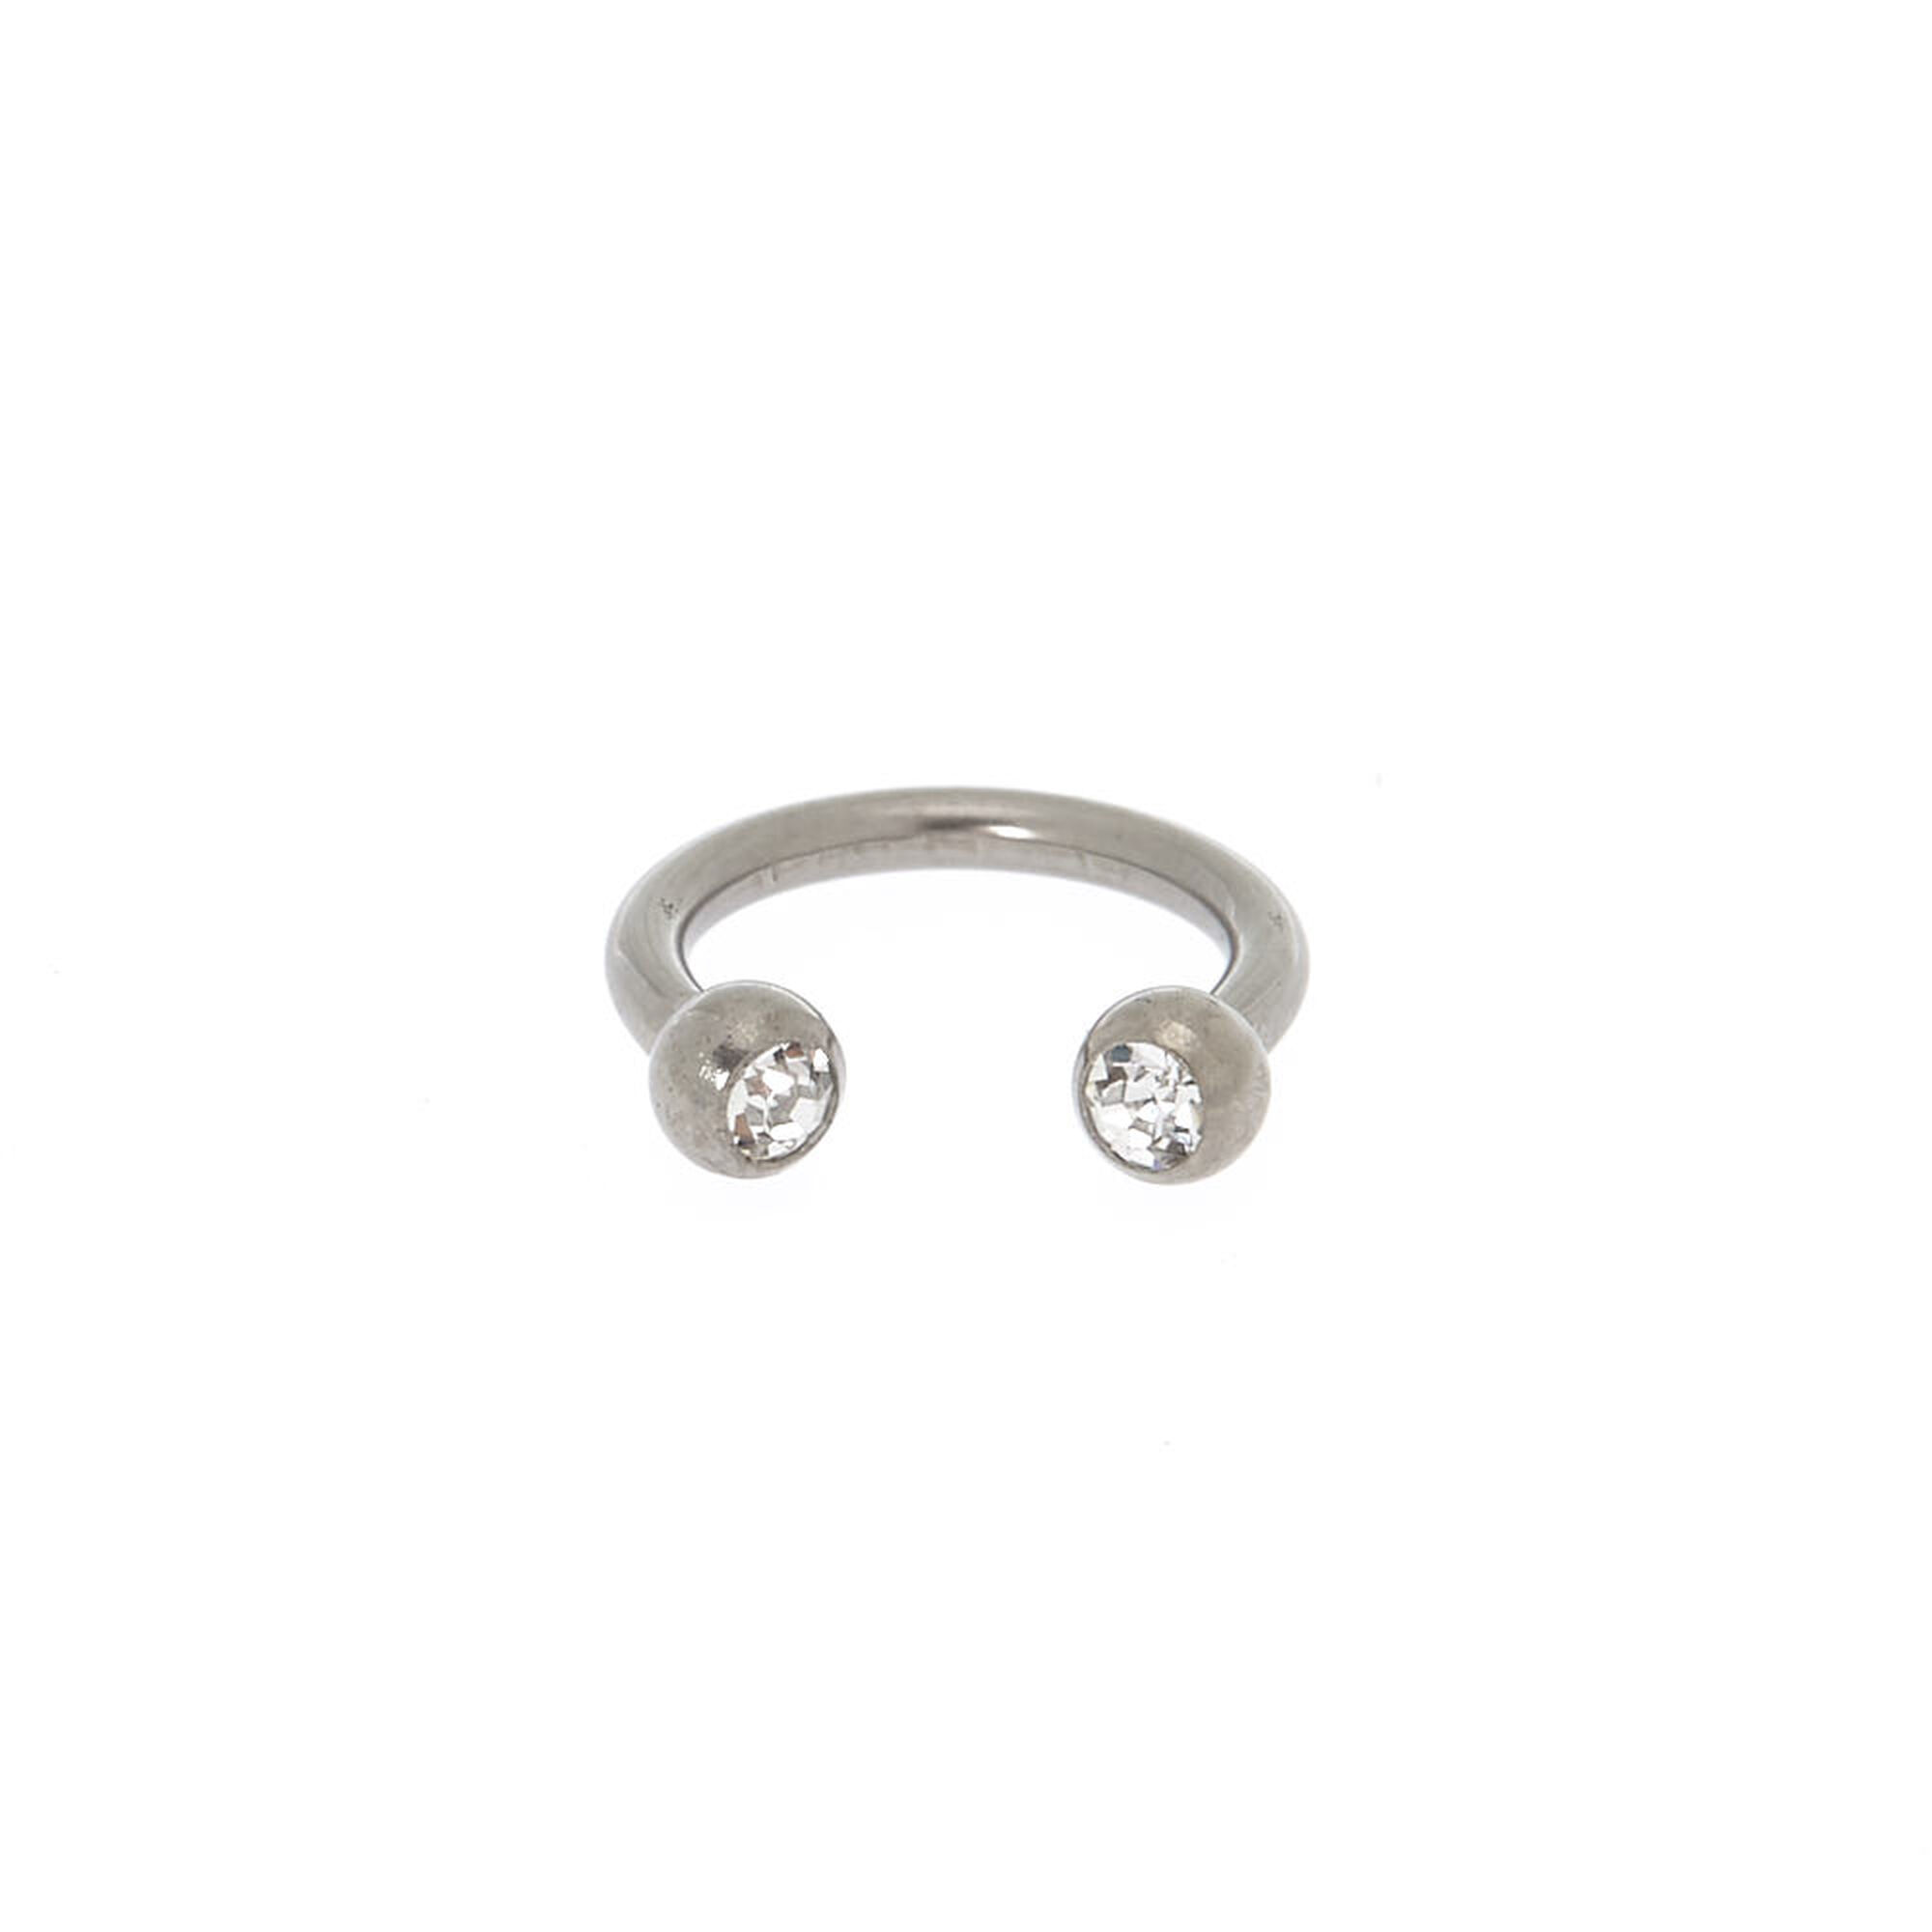 Titanium 16G Horseshoe Nose Ring | Icing US